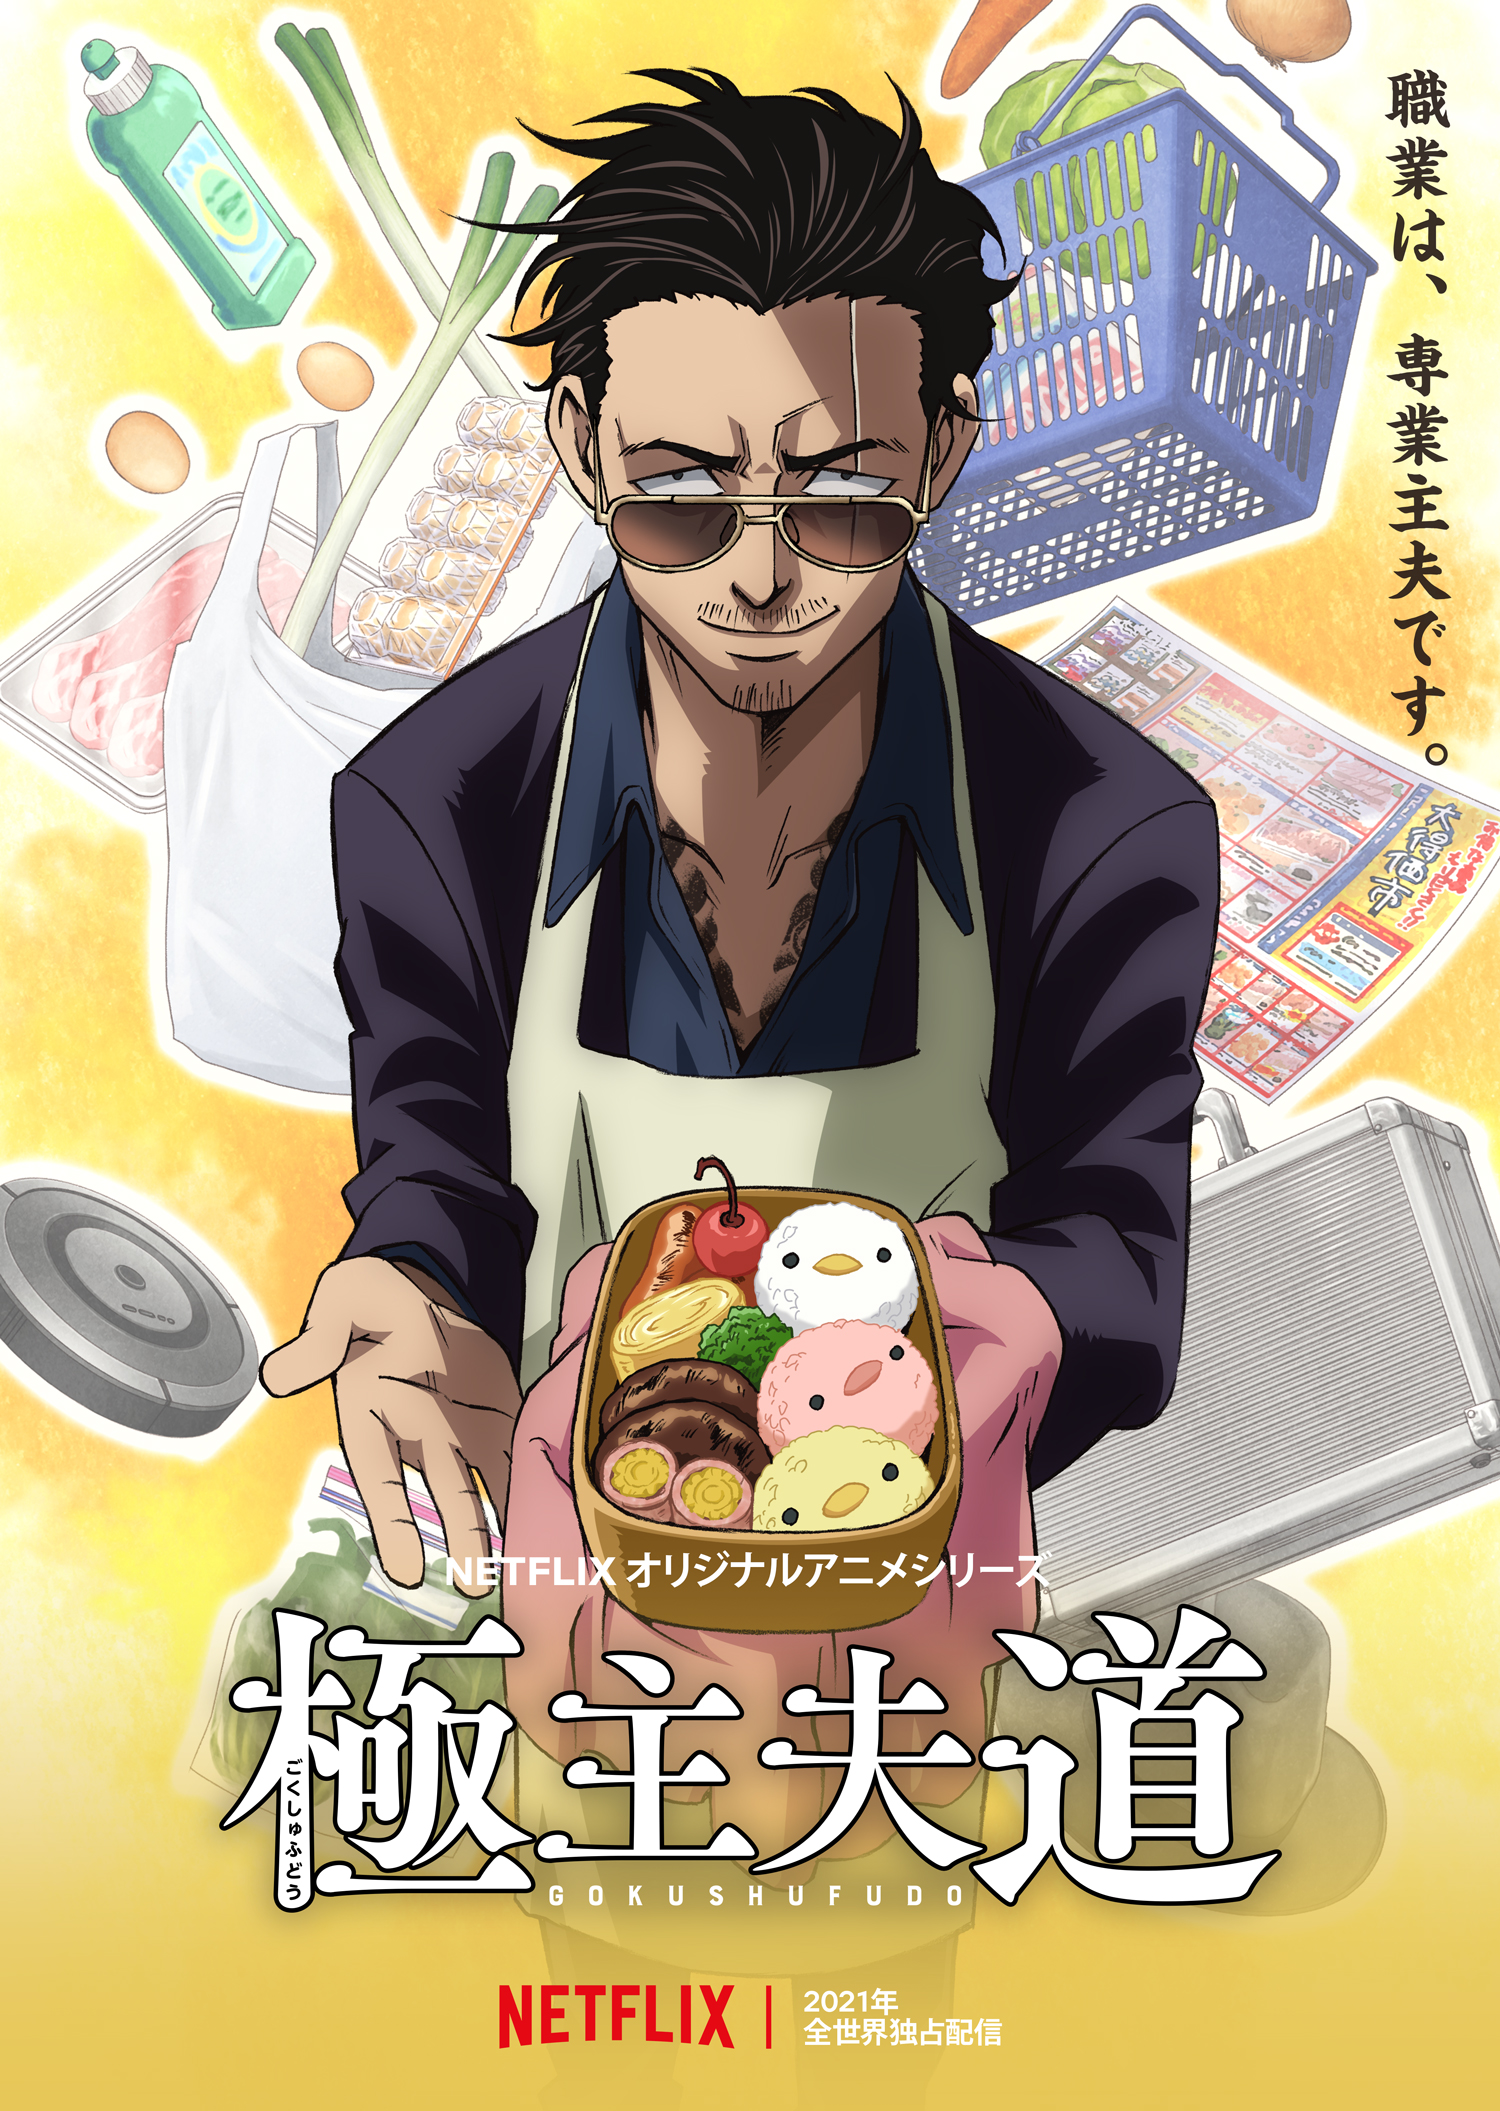 Gokushufudou (The Way Of The Househusband) Anime Image Board